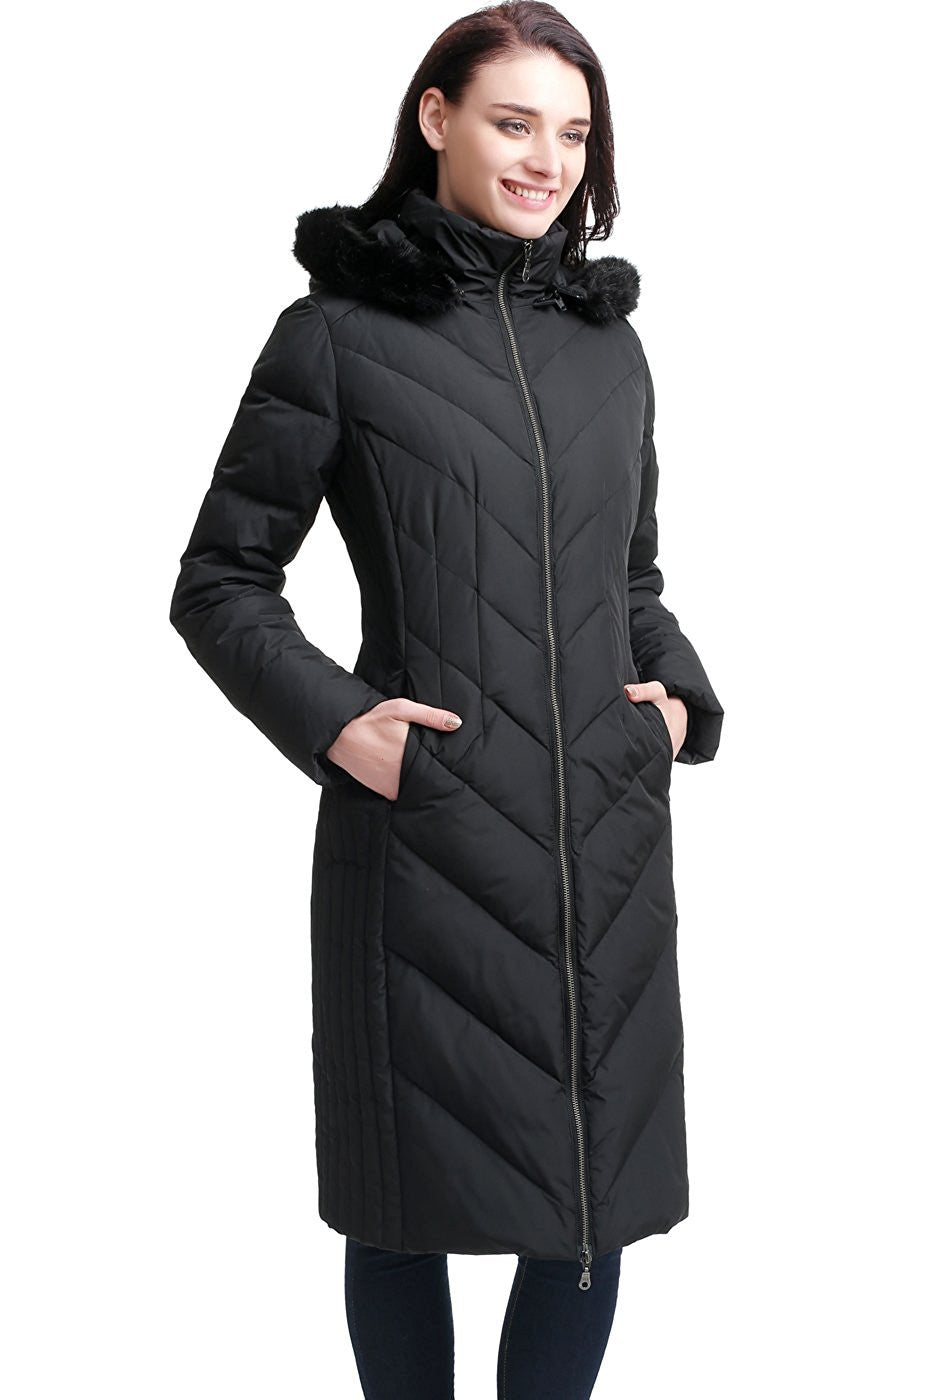 BGSD Women's "Marlene" Waterproof Hooded Long Down Coat - Plus